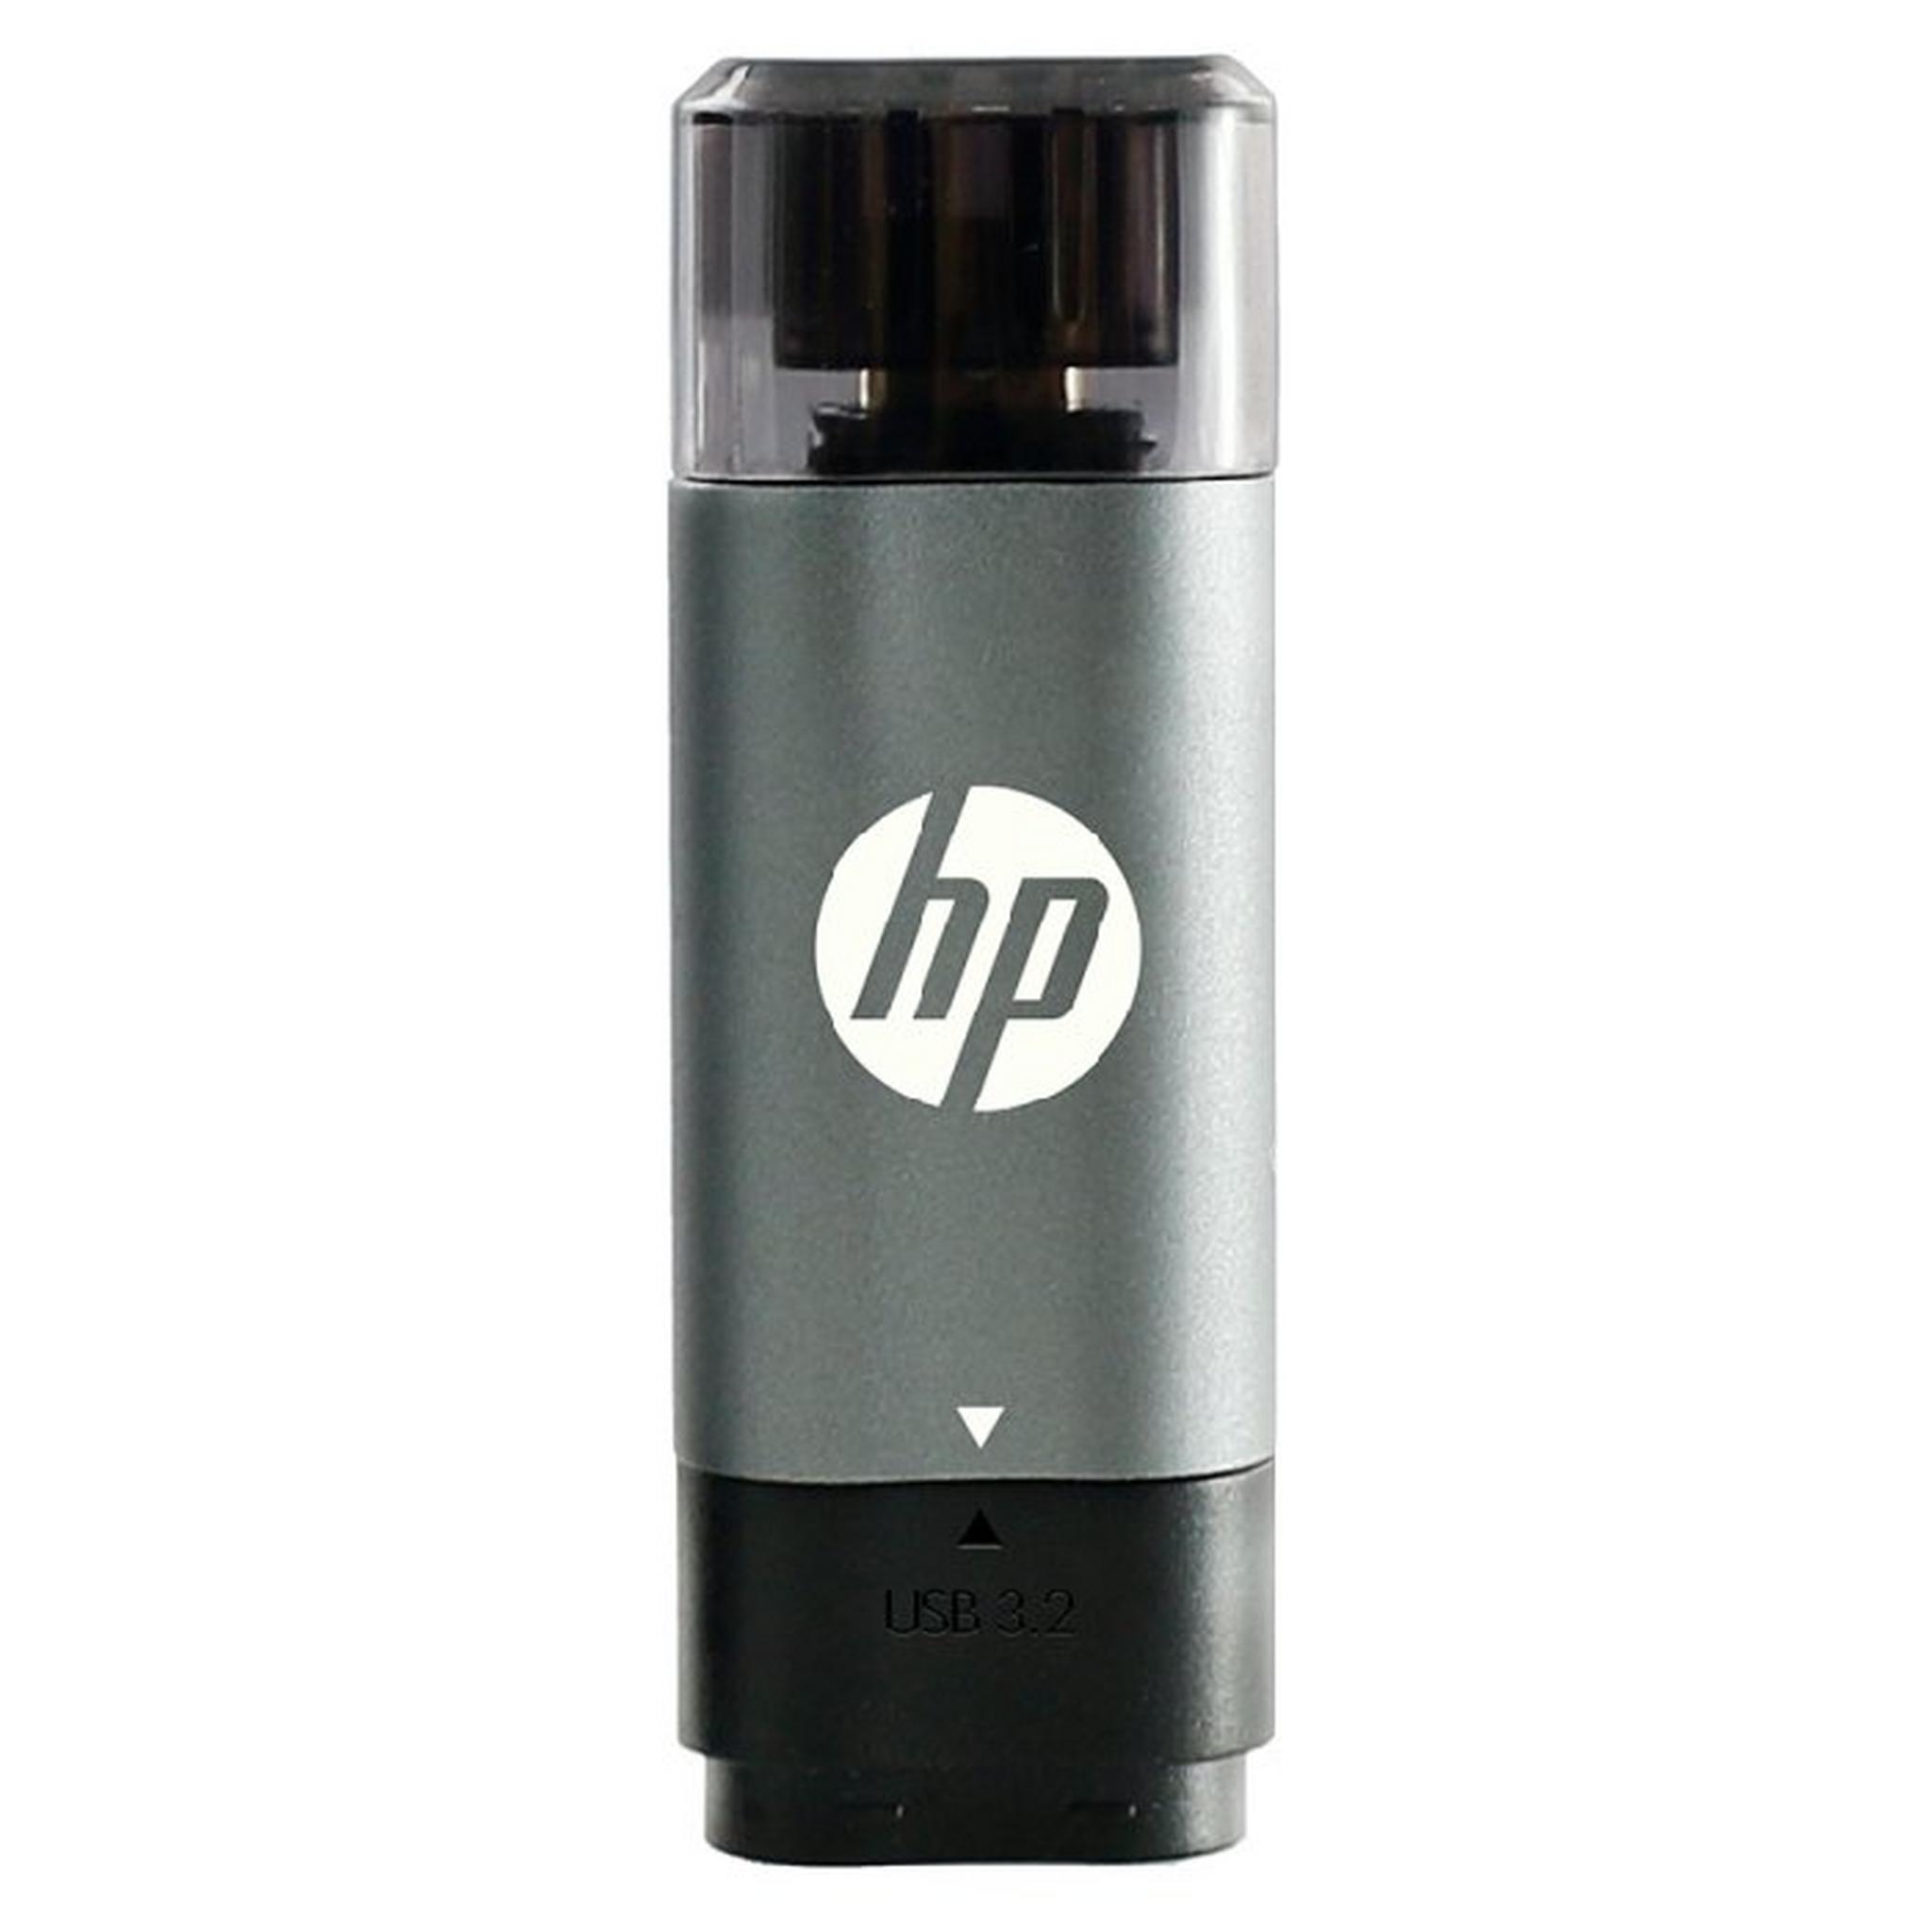 HP 3.2 256 GB USB-C Flash Drive (5600C)